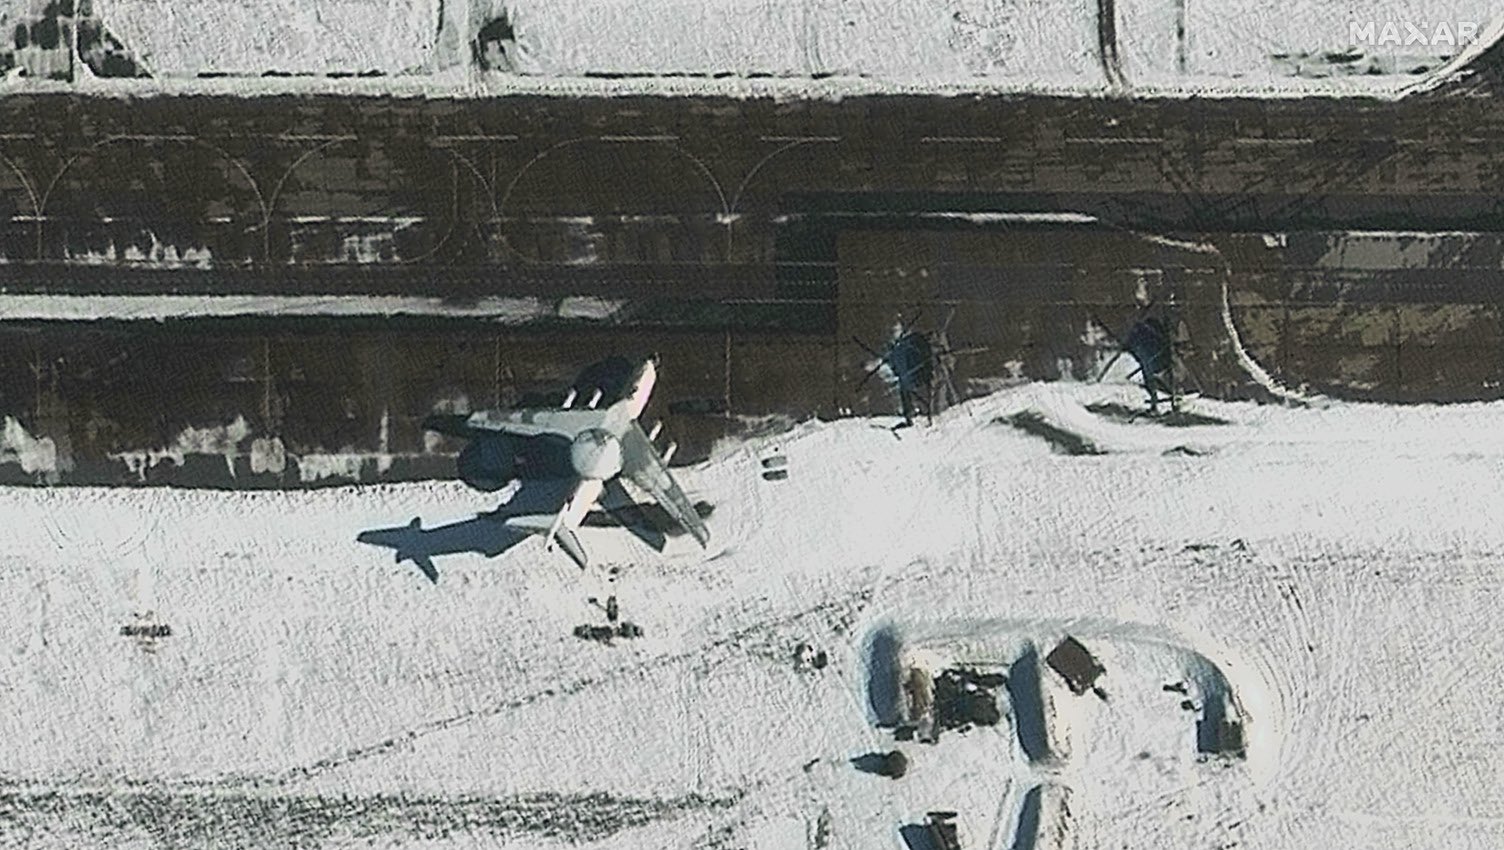 фото літака А-50У на аеродромі «Мачулищі» на яких видно пошкодження на фюзеляжі біля кабіни пілота та на самому радарі.